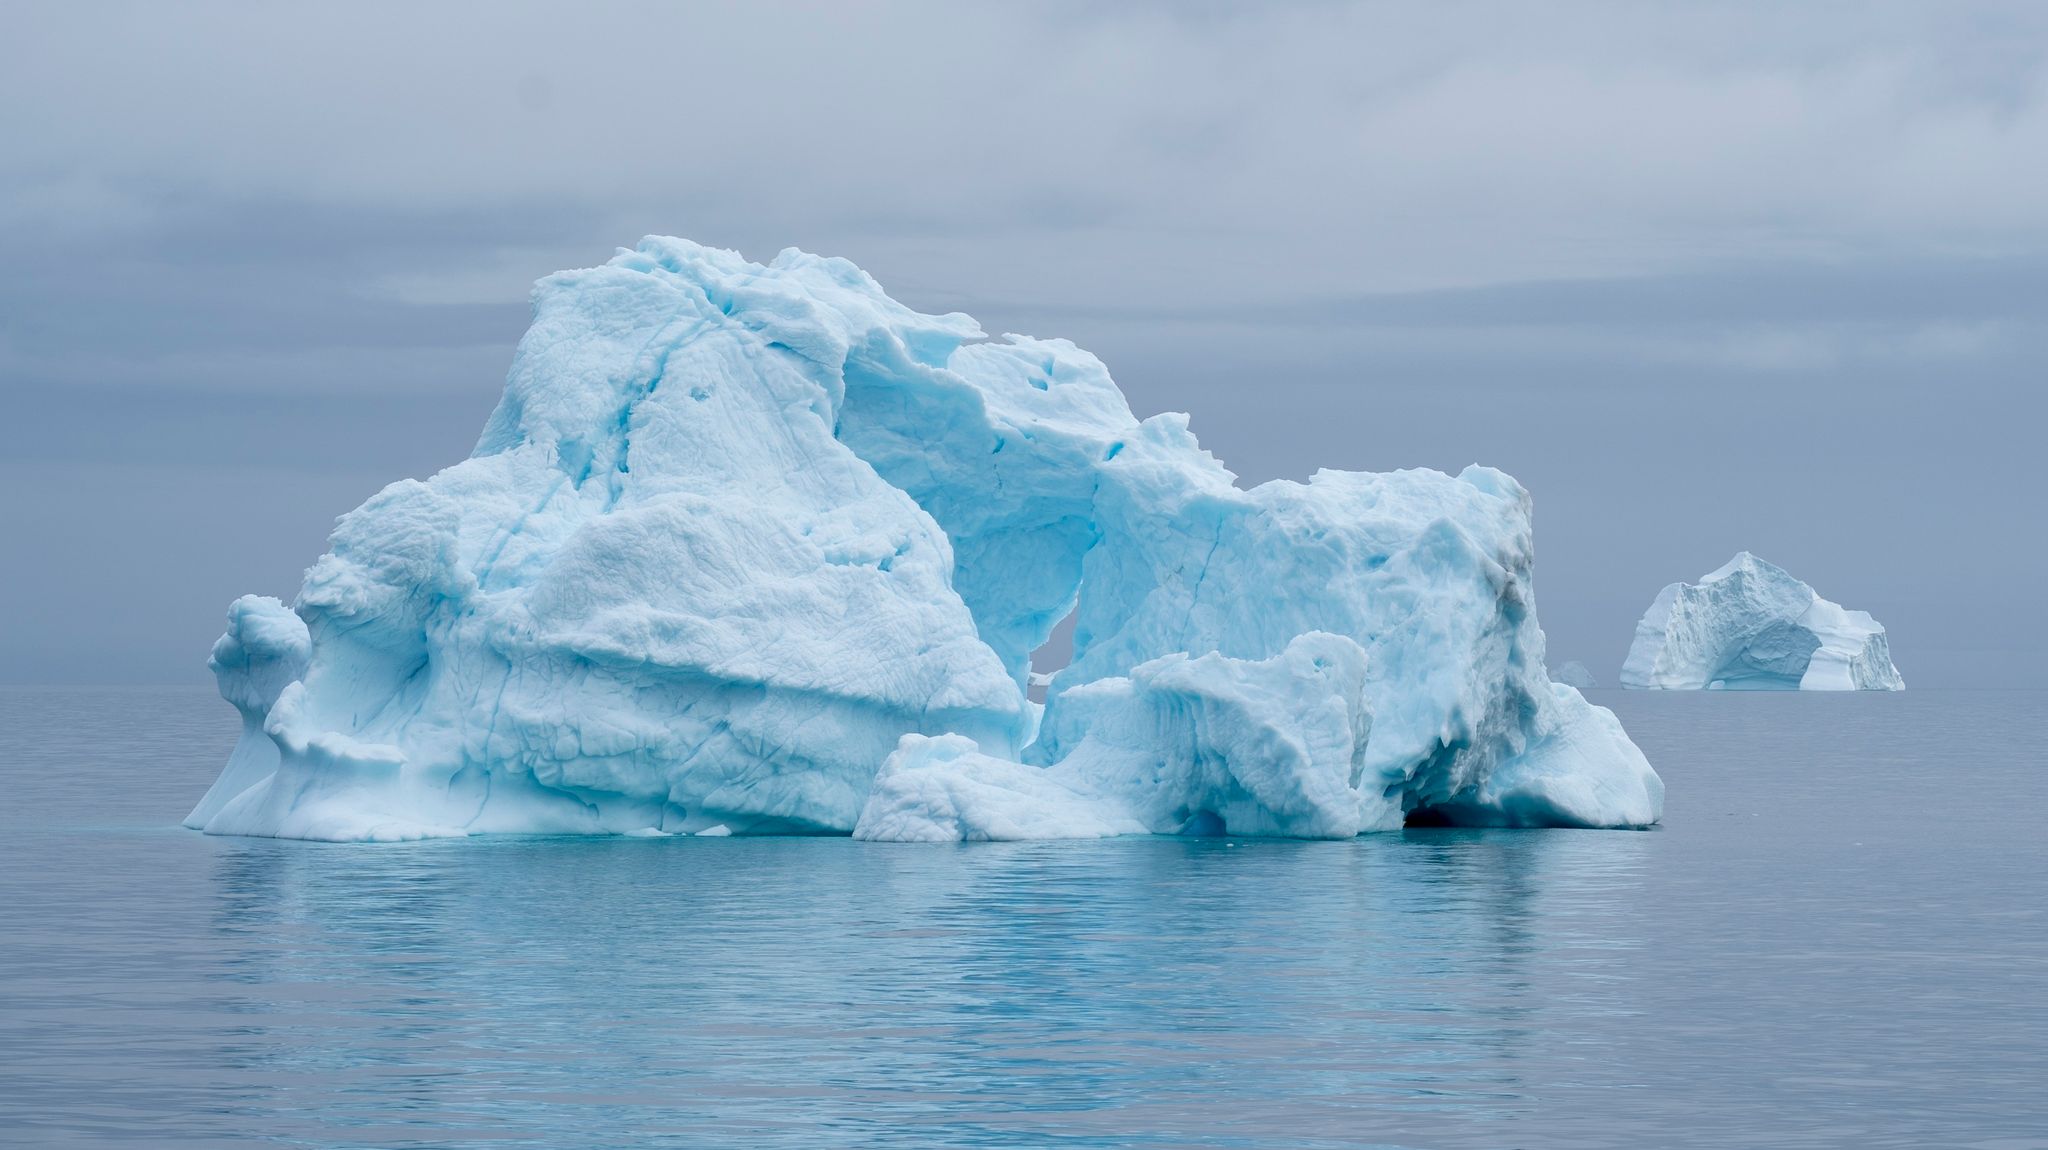 Eisberge treiben im Scoresby Sund von Grönland.